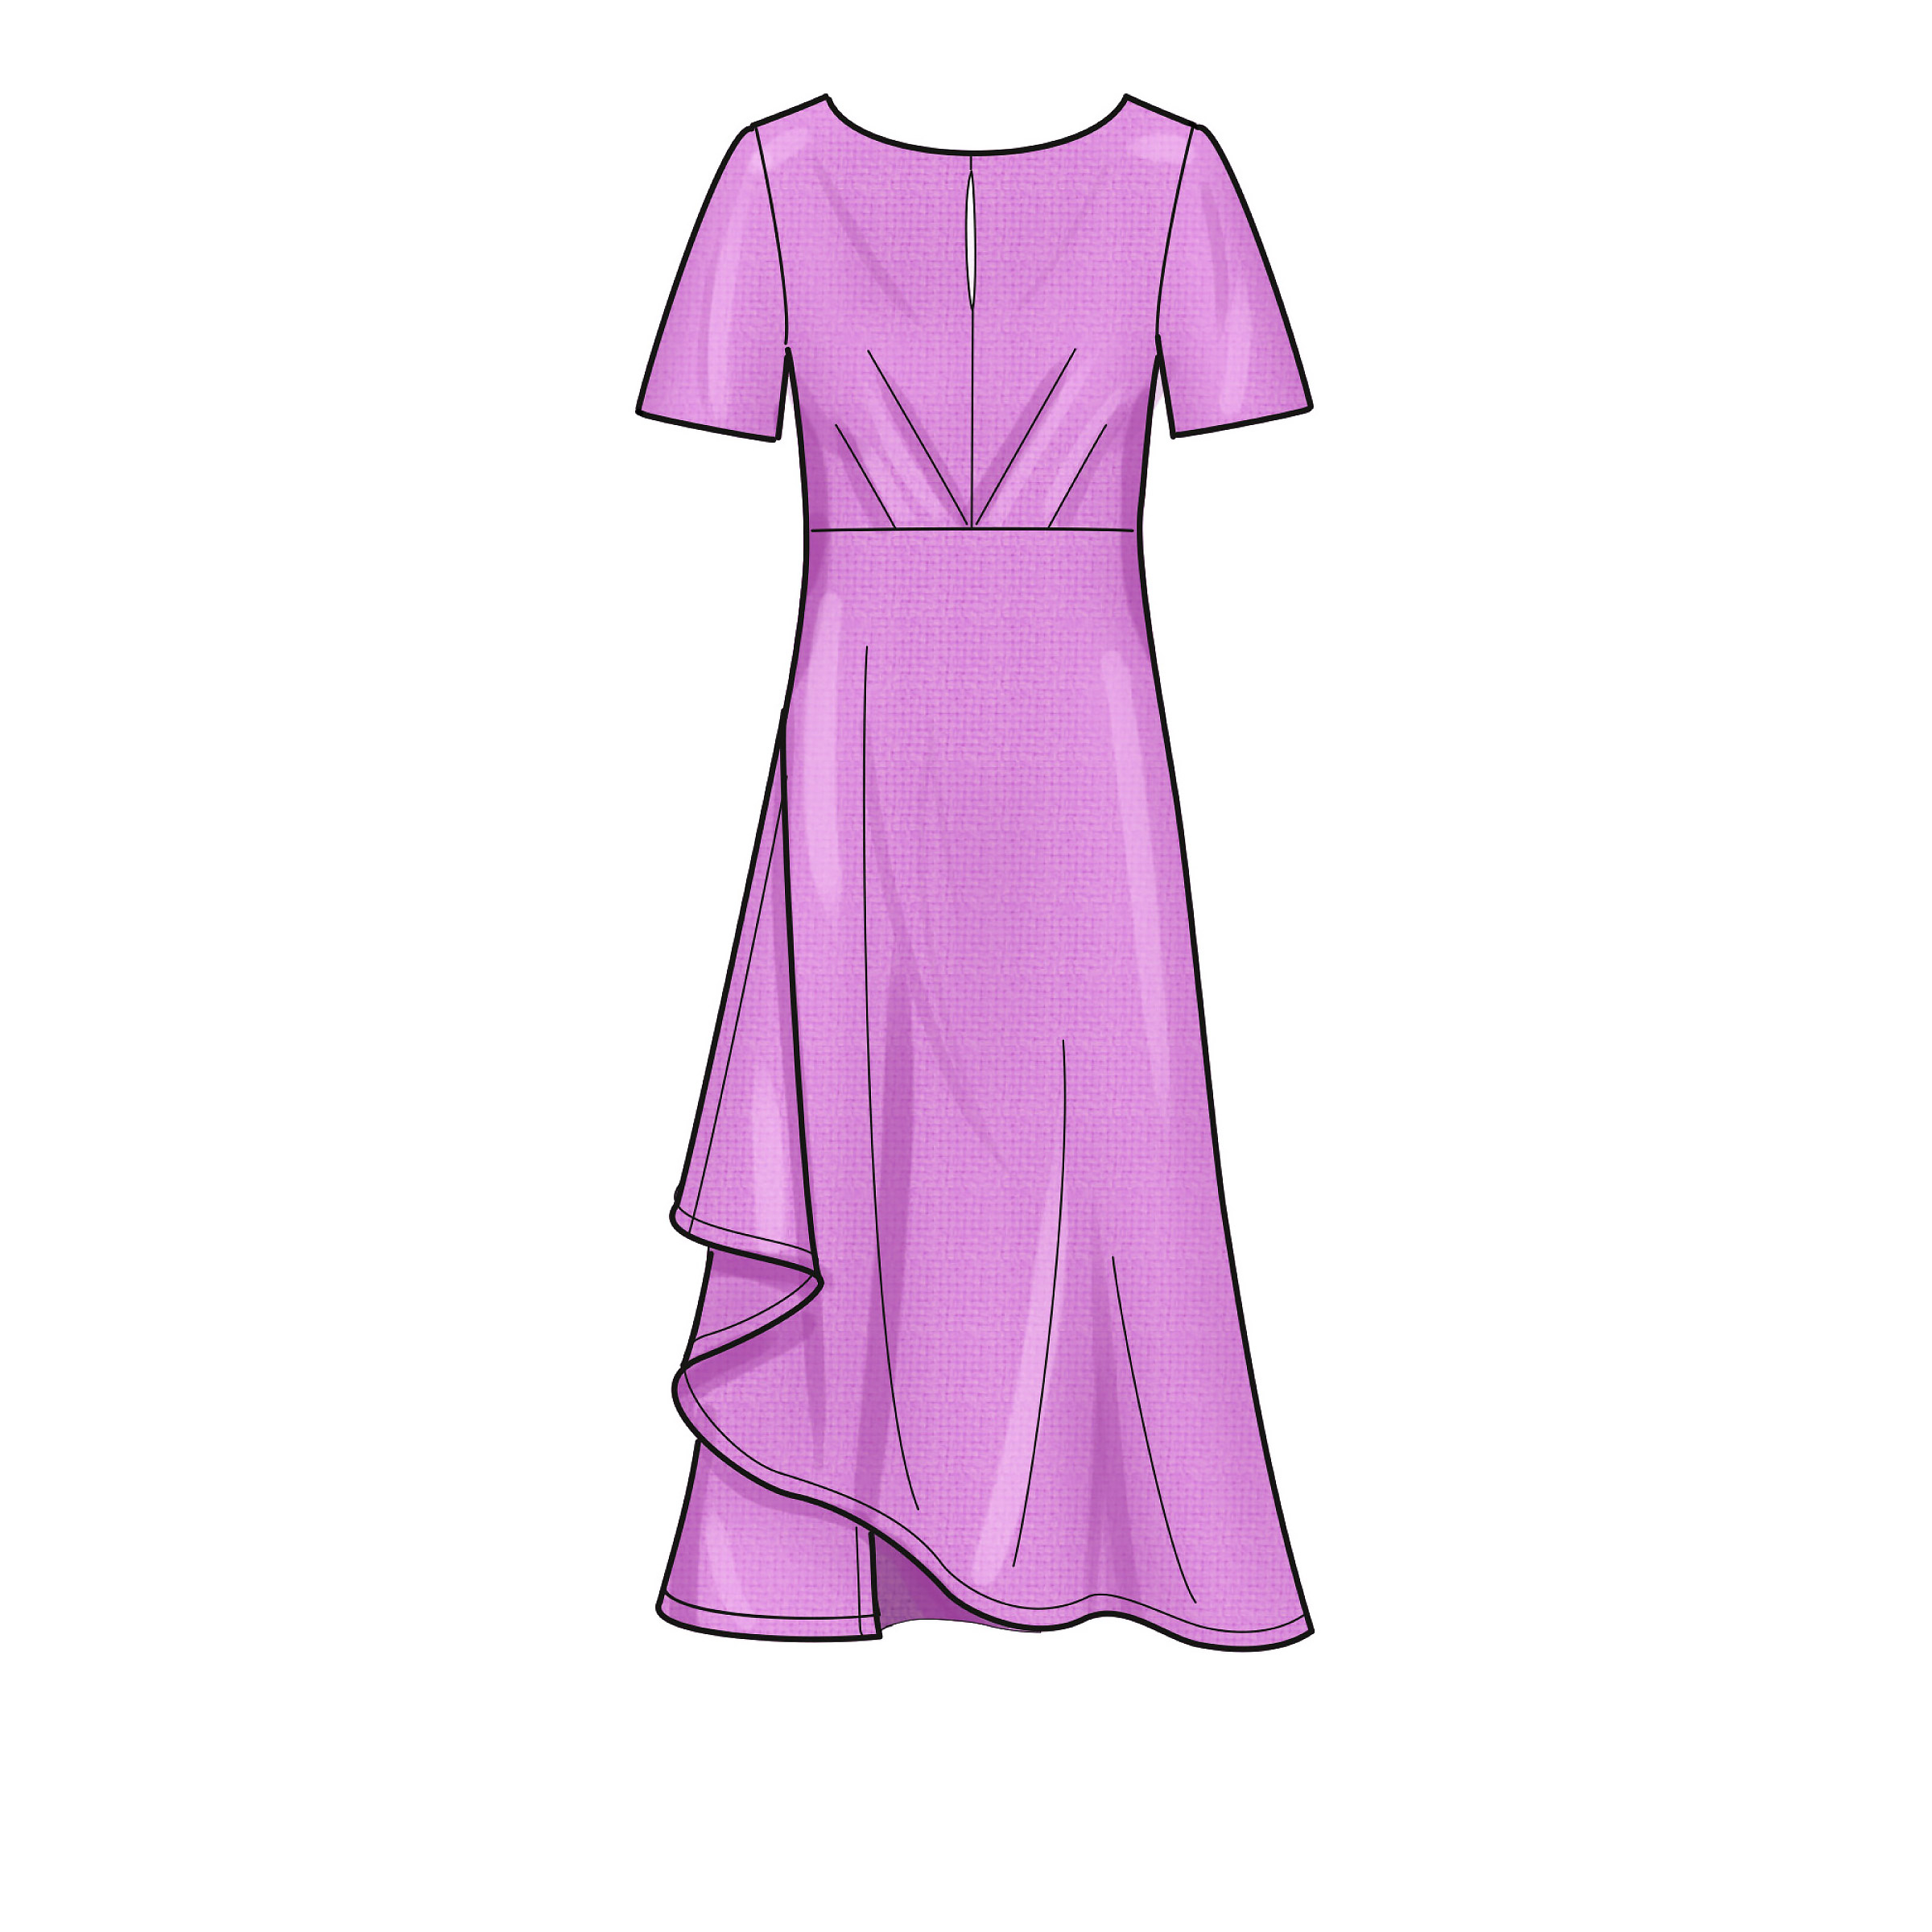 papier variés A 6-8-10-12-14-16-18 New Look N6655 Patron de couture pour robe de femme en deux longueurs avec manches